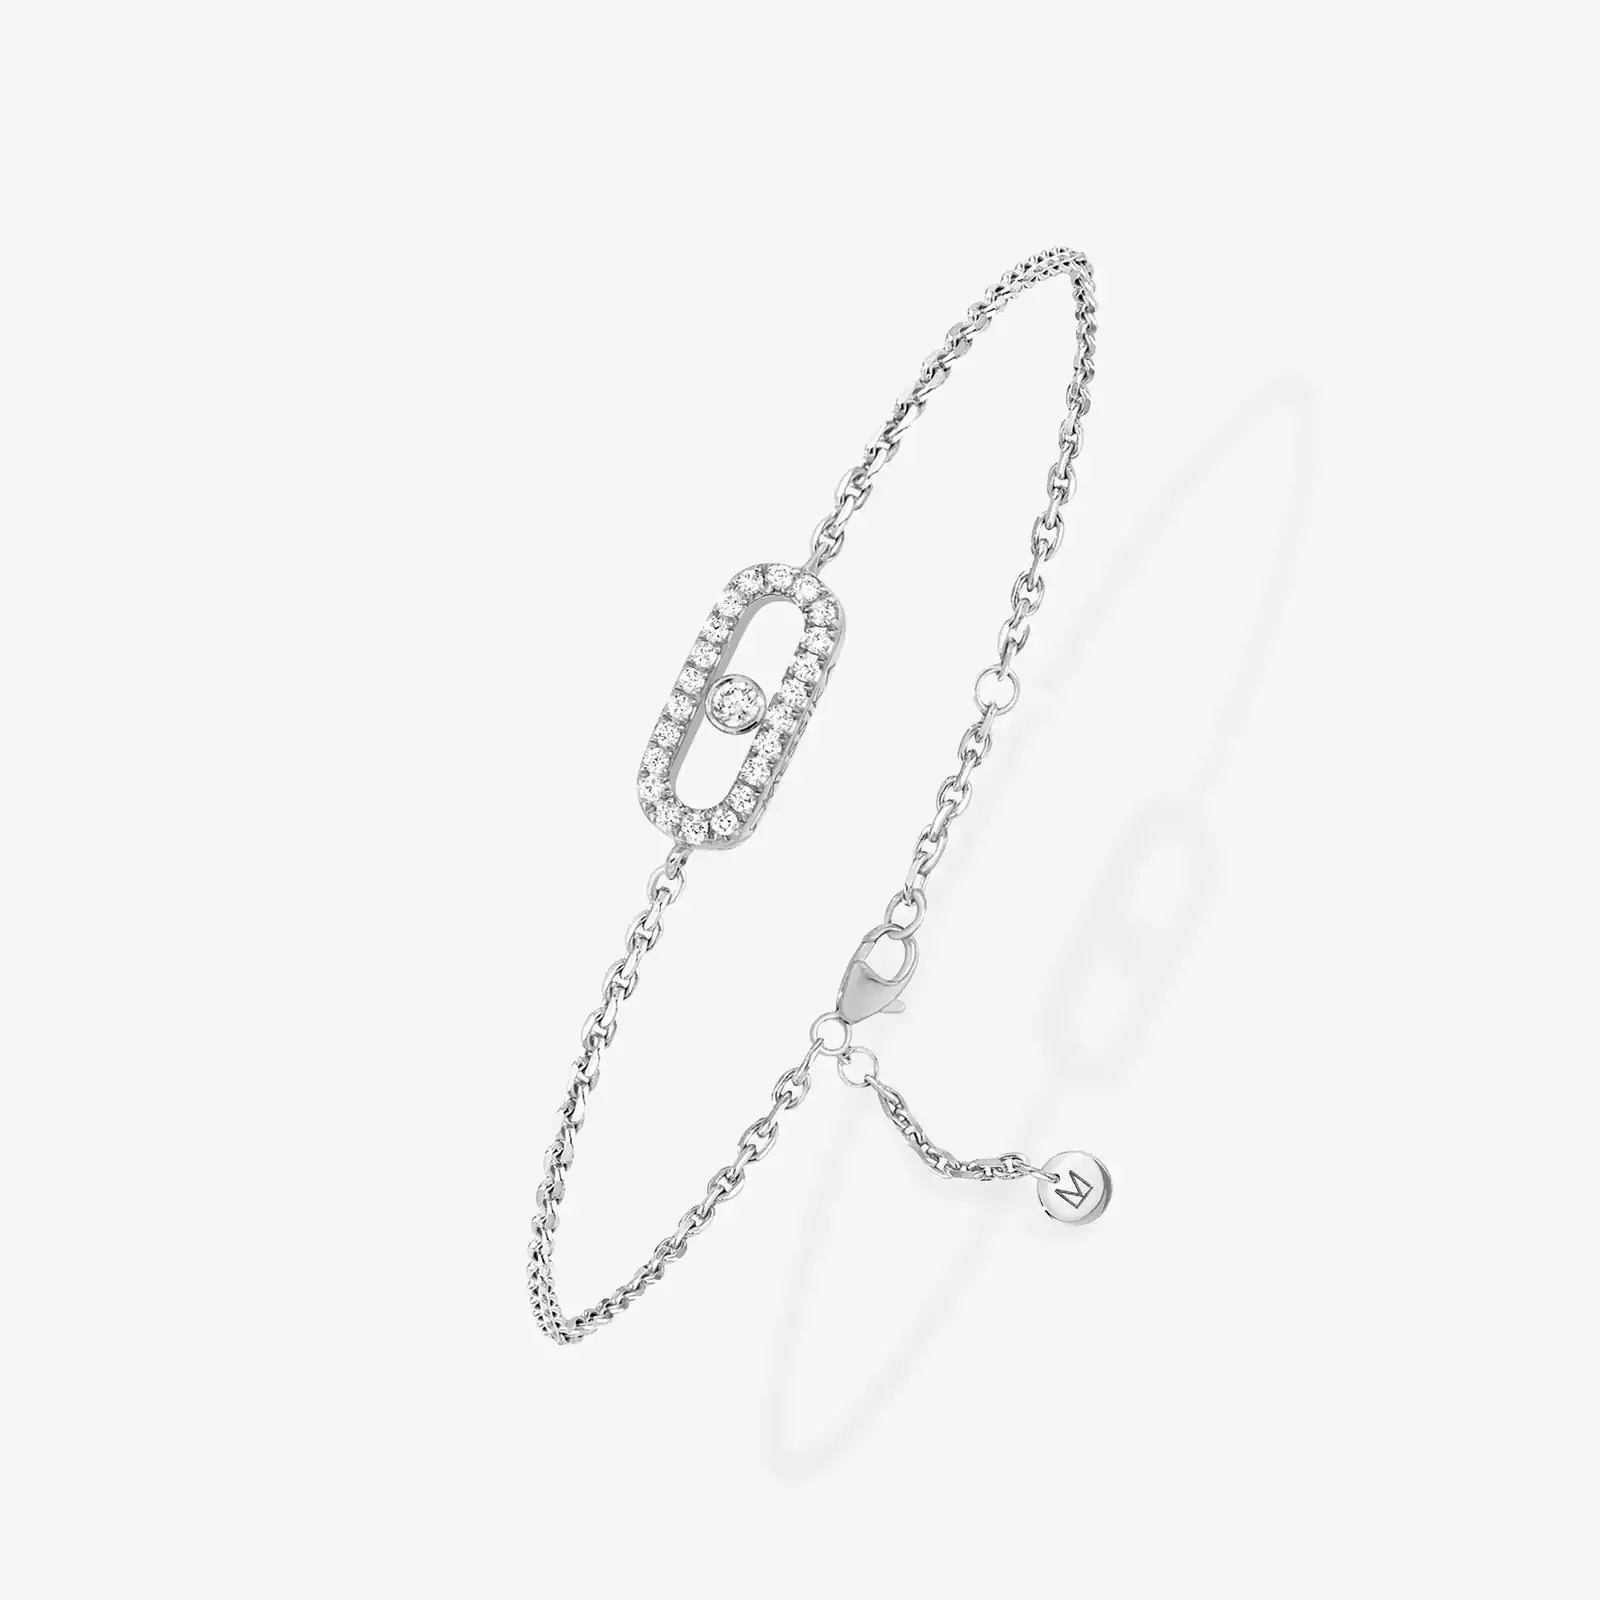 Bracelet For Her White Gold Diamond Messika CARE(S) Pavé Children's Bracelet 12499-WG